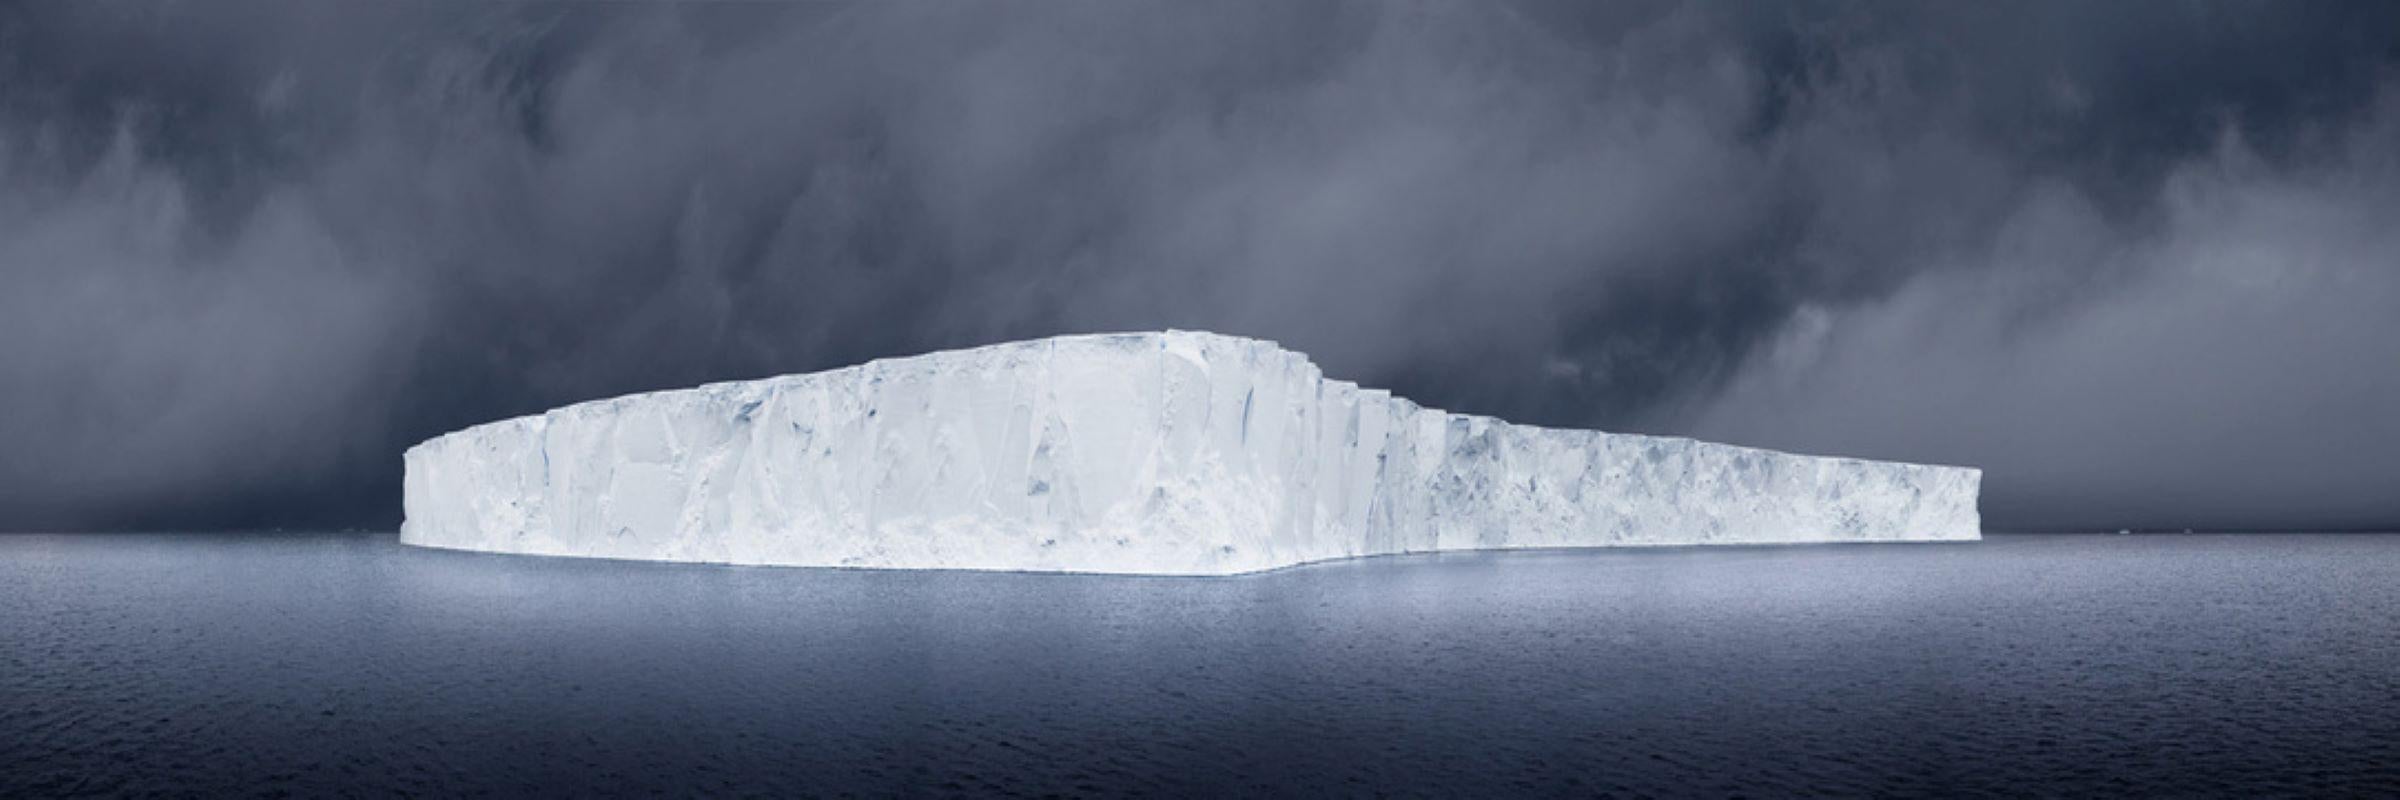 David Burdeny - Blue Montag, Antarctica, Fotografie 2020, Nachdruck